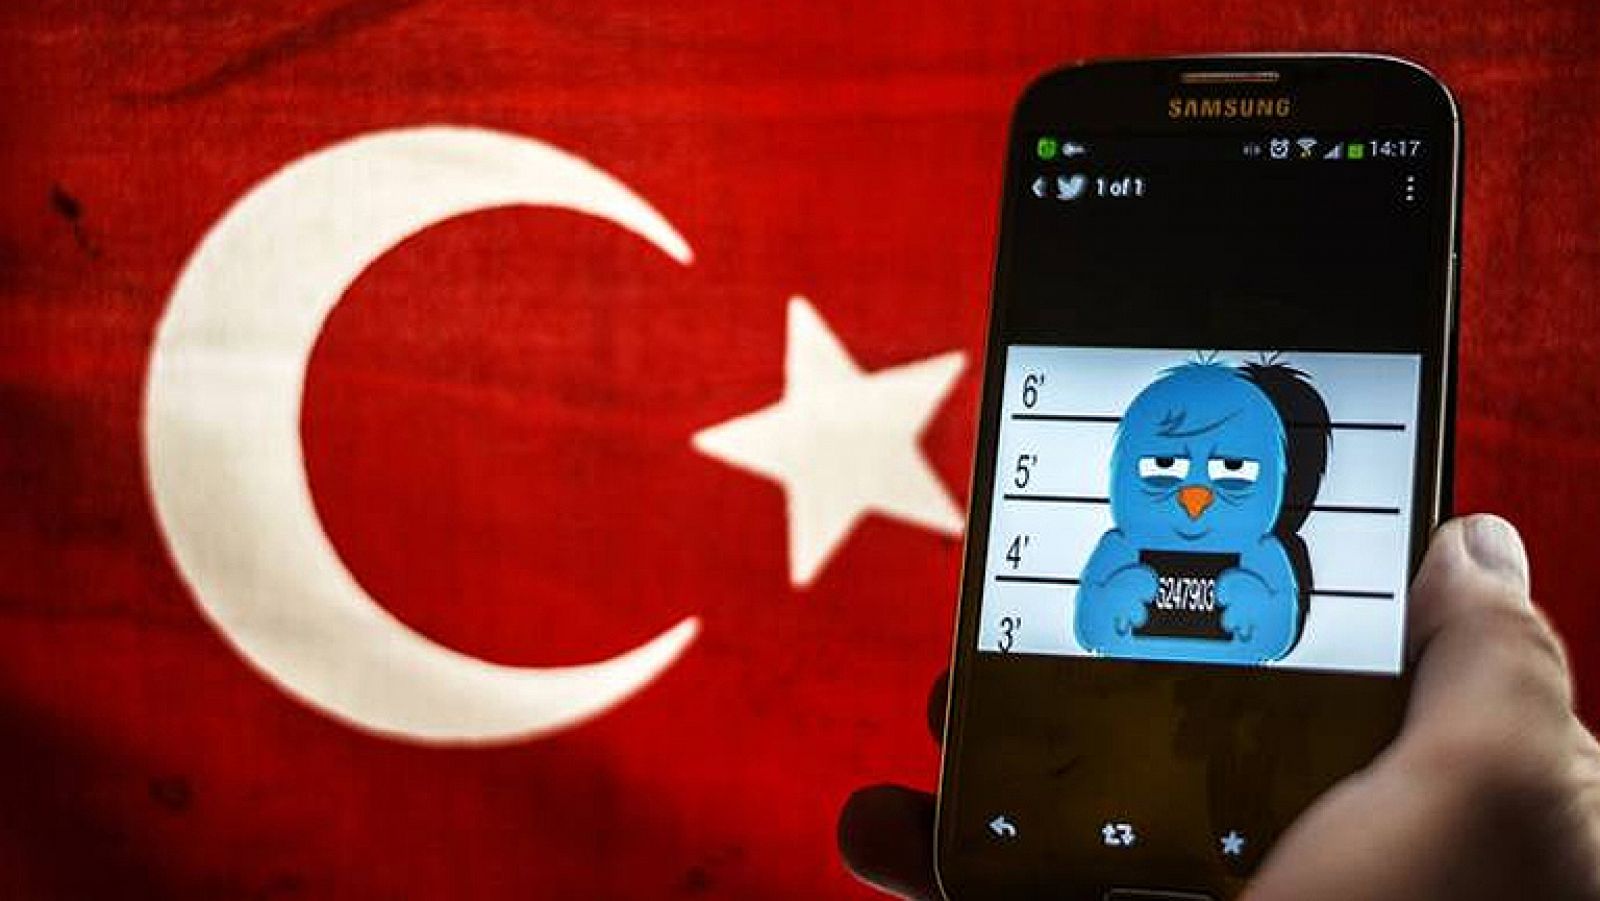  El Tribunal Constitucional turco ha ordenado levantar el bloqueo a la red social Twitter que impusieron las autoridades hace dos semanas, en plena campaña electoral, según han anunciado diversos medios nacionales e internacionales. 